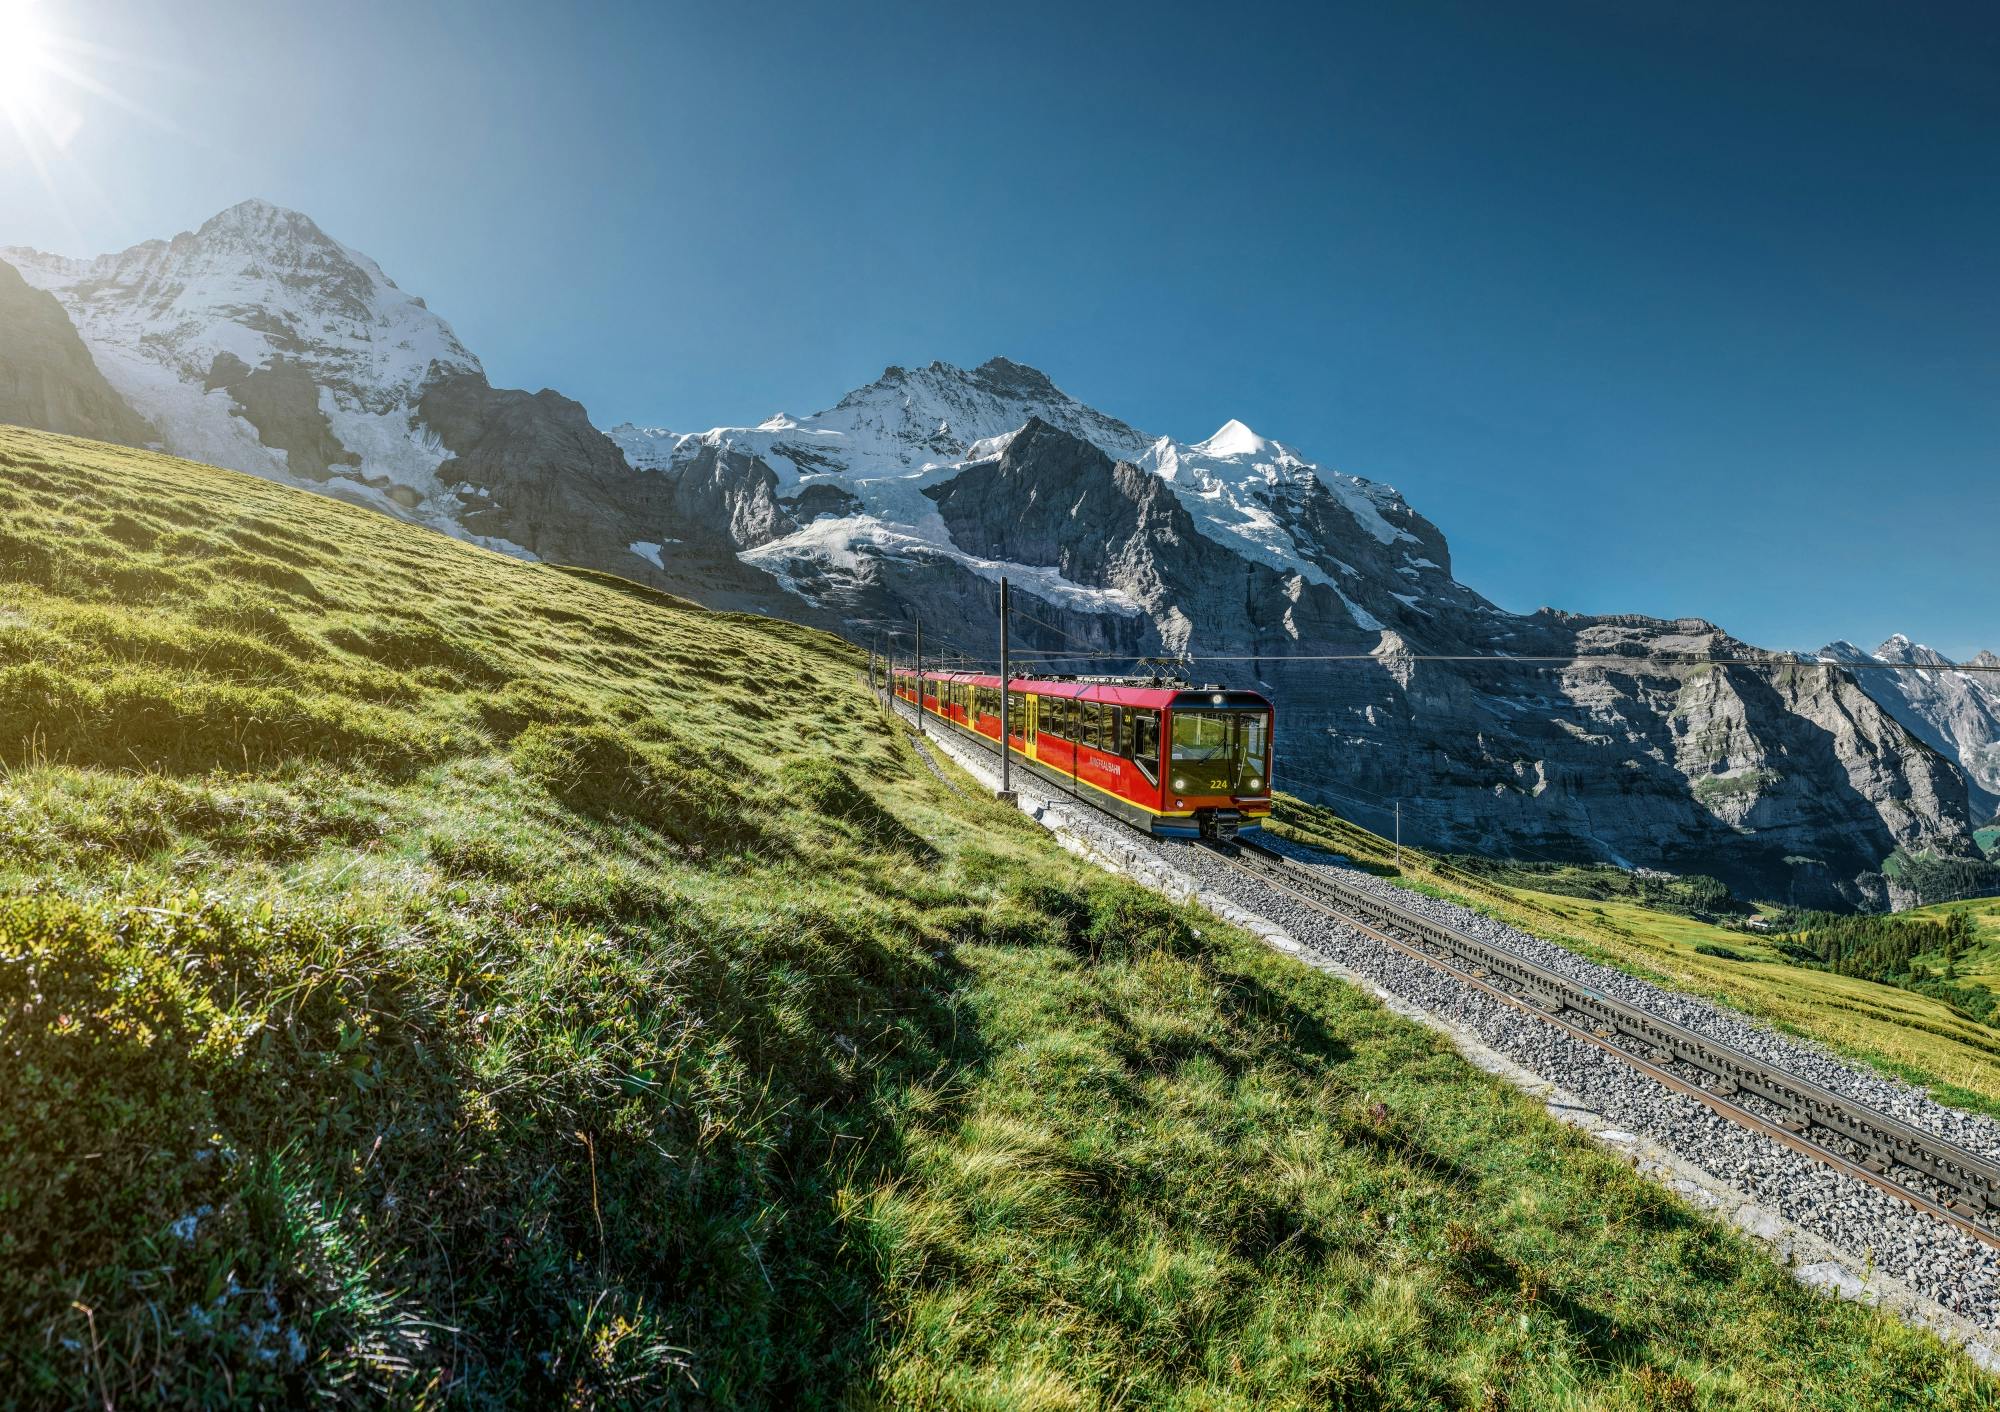 Escursione alla Jungfraujoch da Zurigo